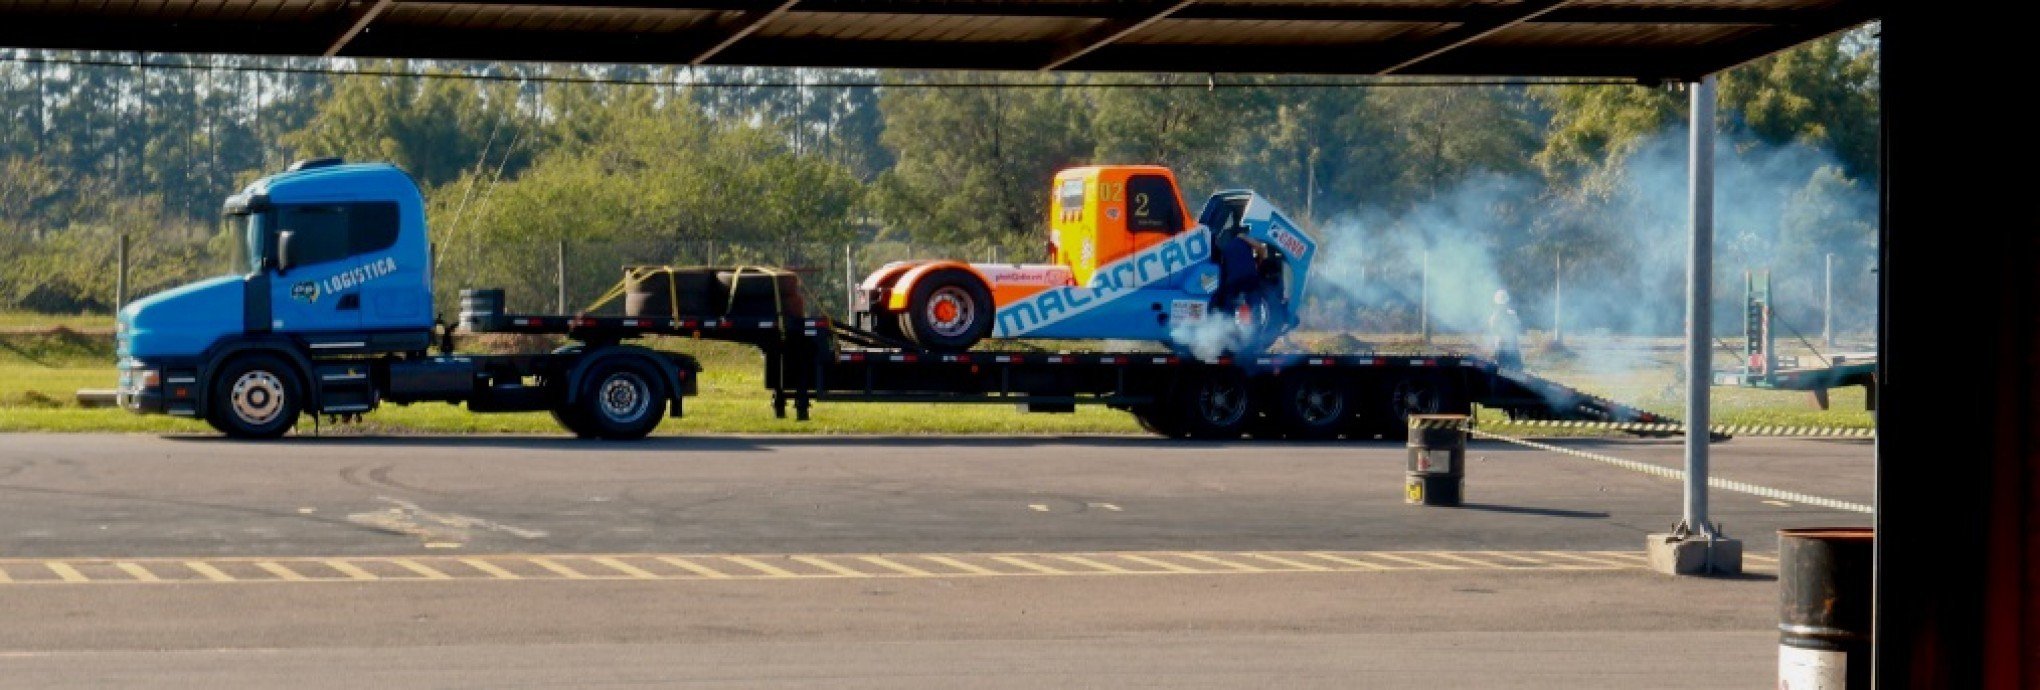 Máquinas de cinco toneladas aceleram até 190 km/h no autódromo do Velopark em Santa Rita